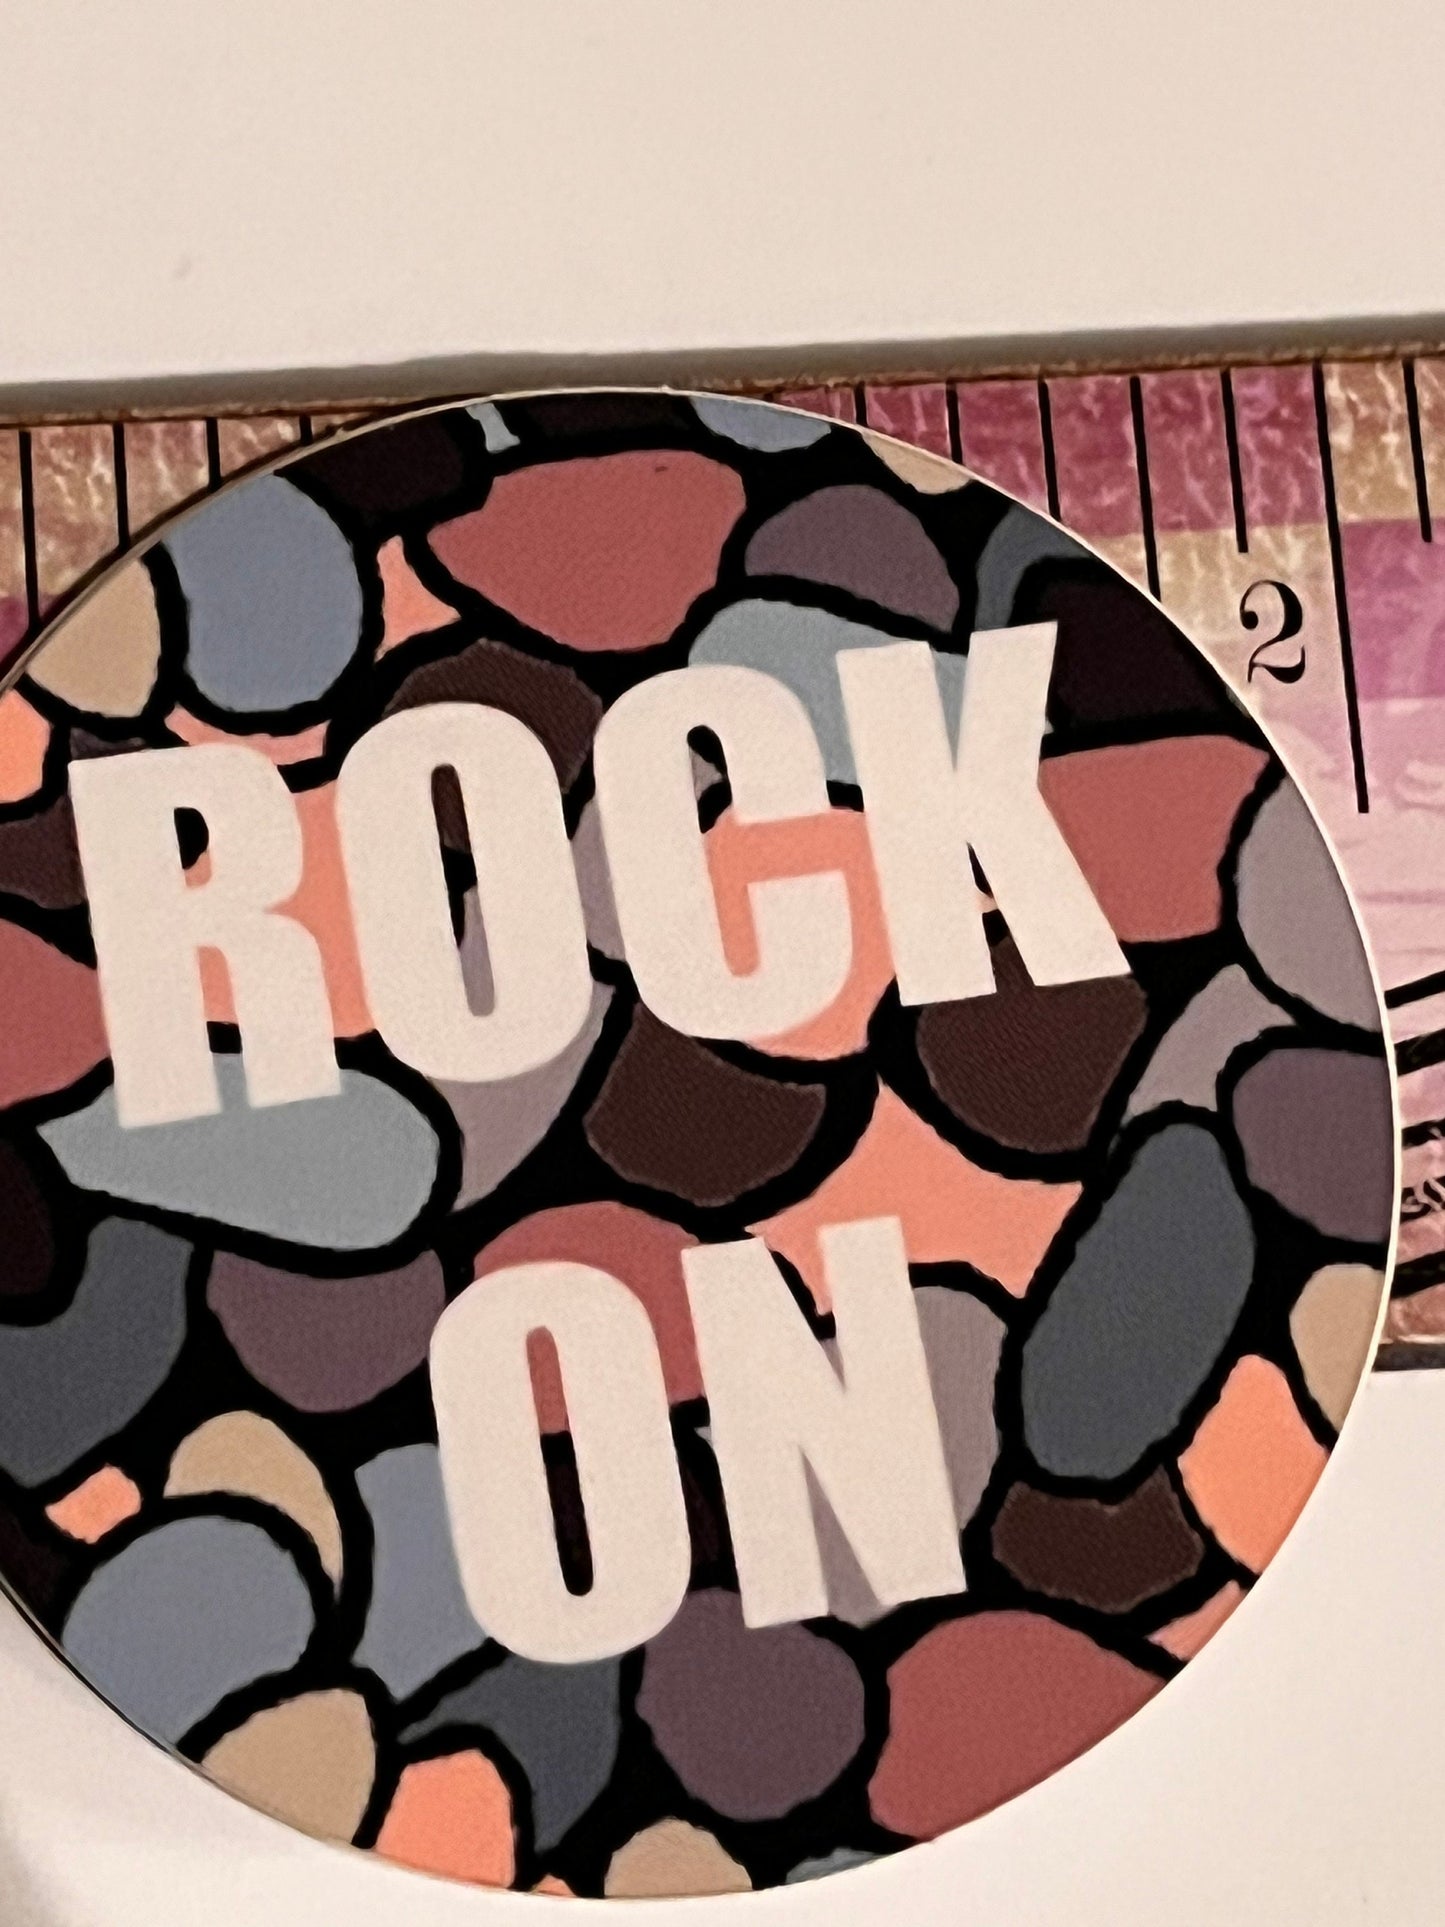 Rock On vinyl sticker | sticker | Beach | decal |  rocks | picking rocks | rockhound | agates | beachcomber